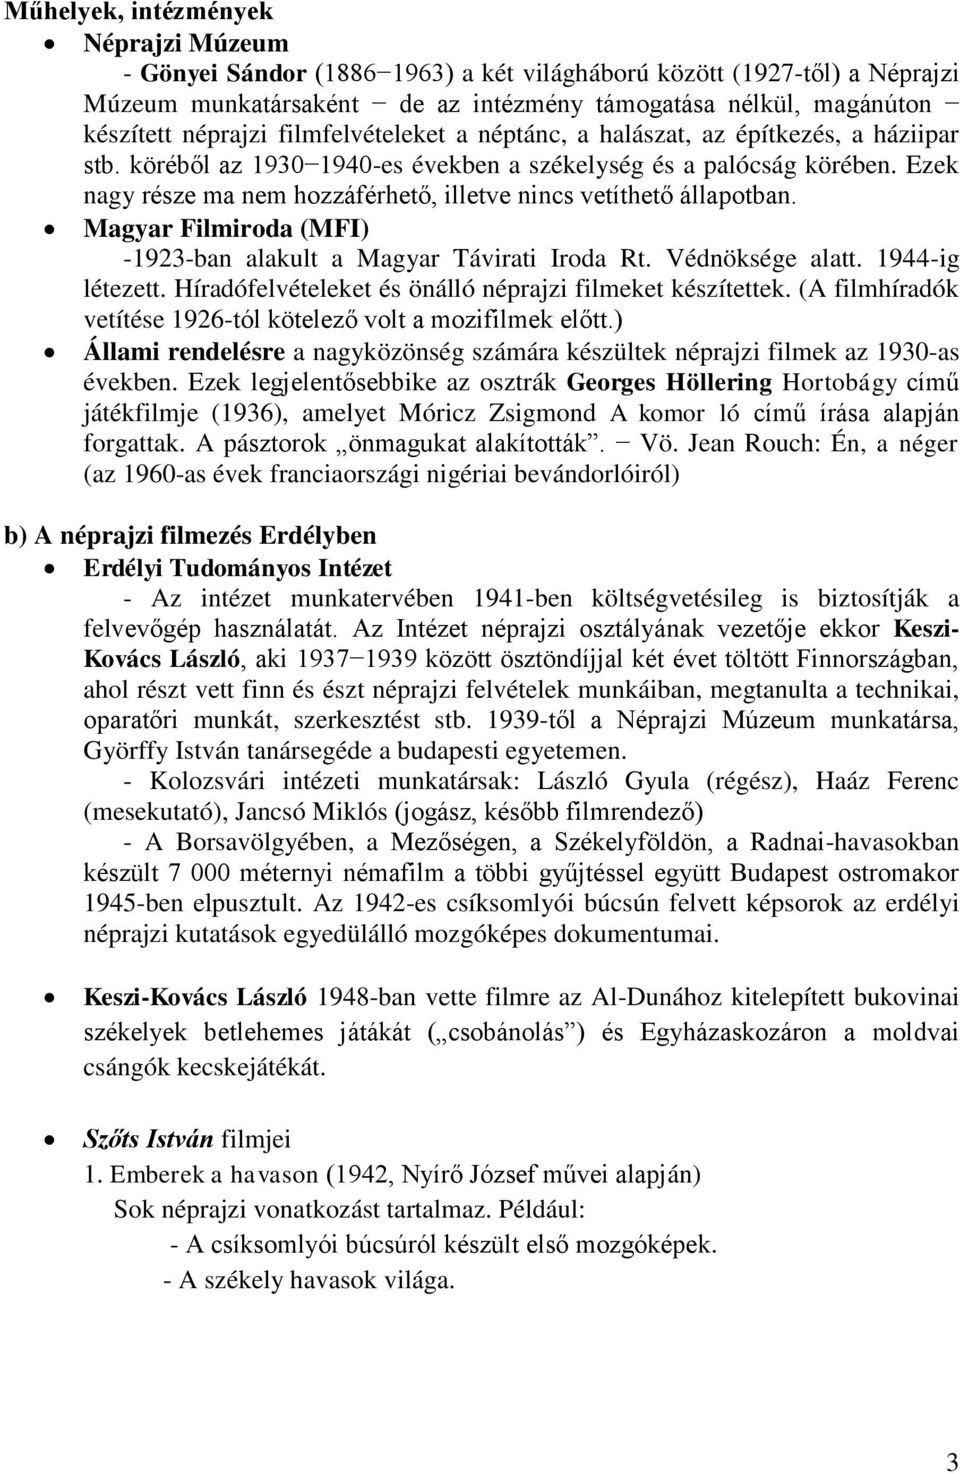 Ezek nagy része ma nem hozzáférhető, illetve nincs vetíthető állapotban. Magyar Filmiroda (MFI) -1923-ban alakult a Magyar Távirati Iroda Rt. Védnöksége alatt. 1944-ig létezett.